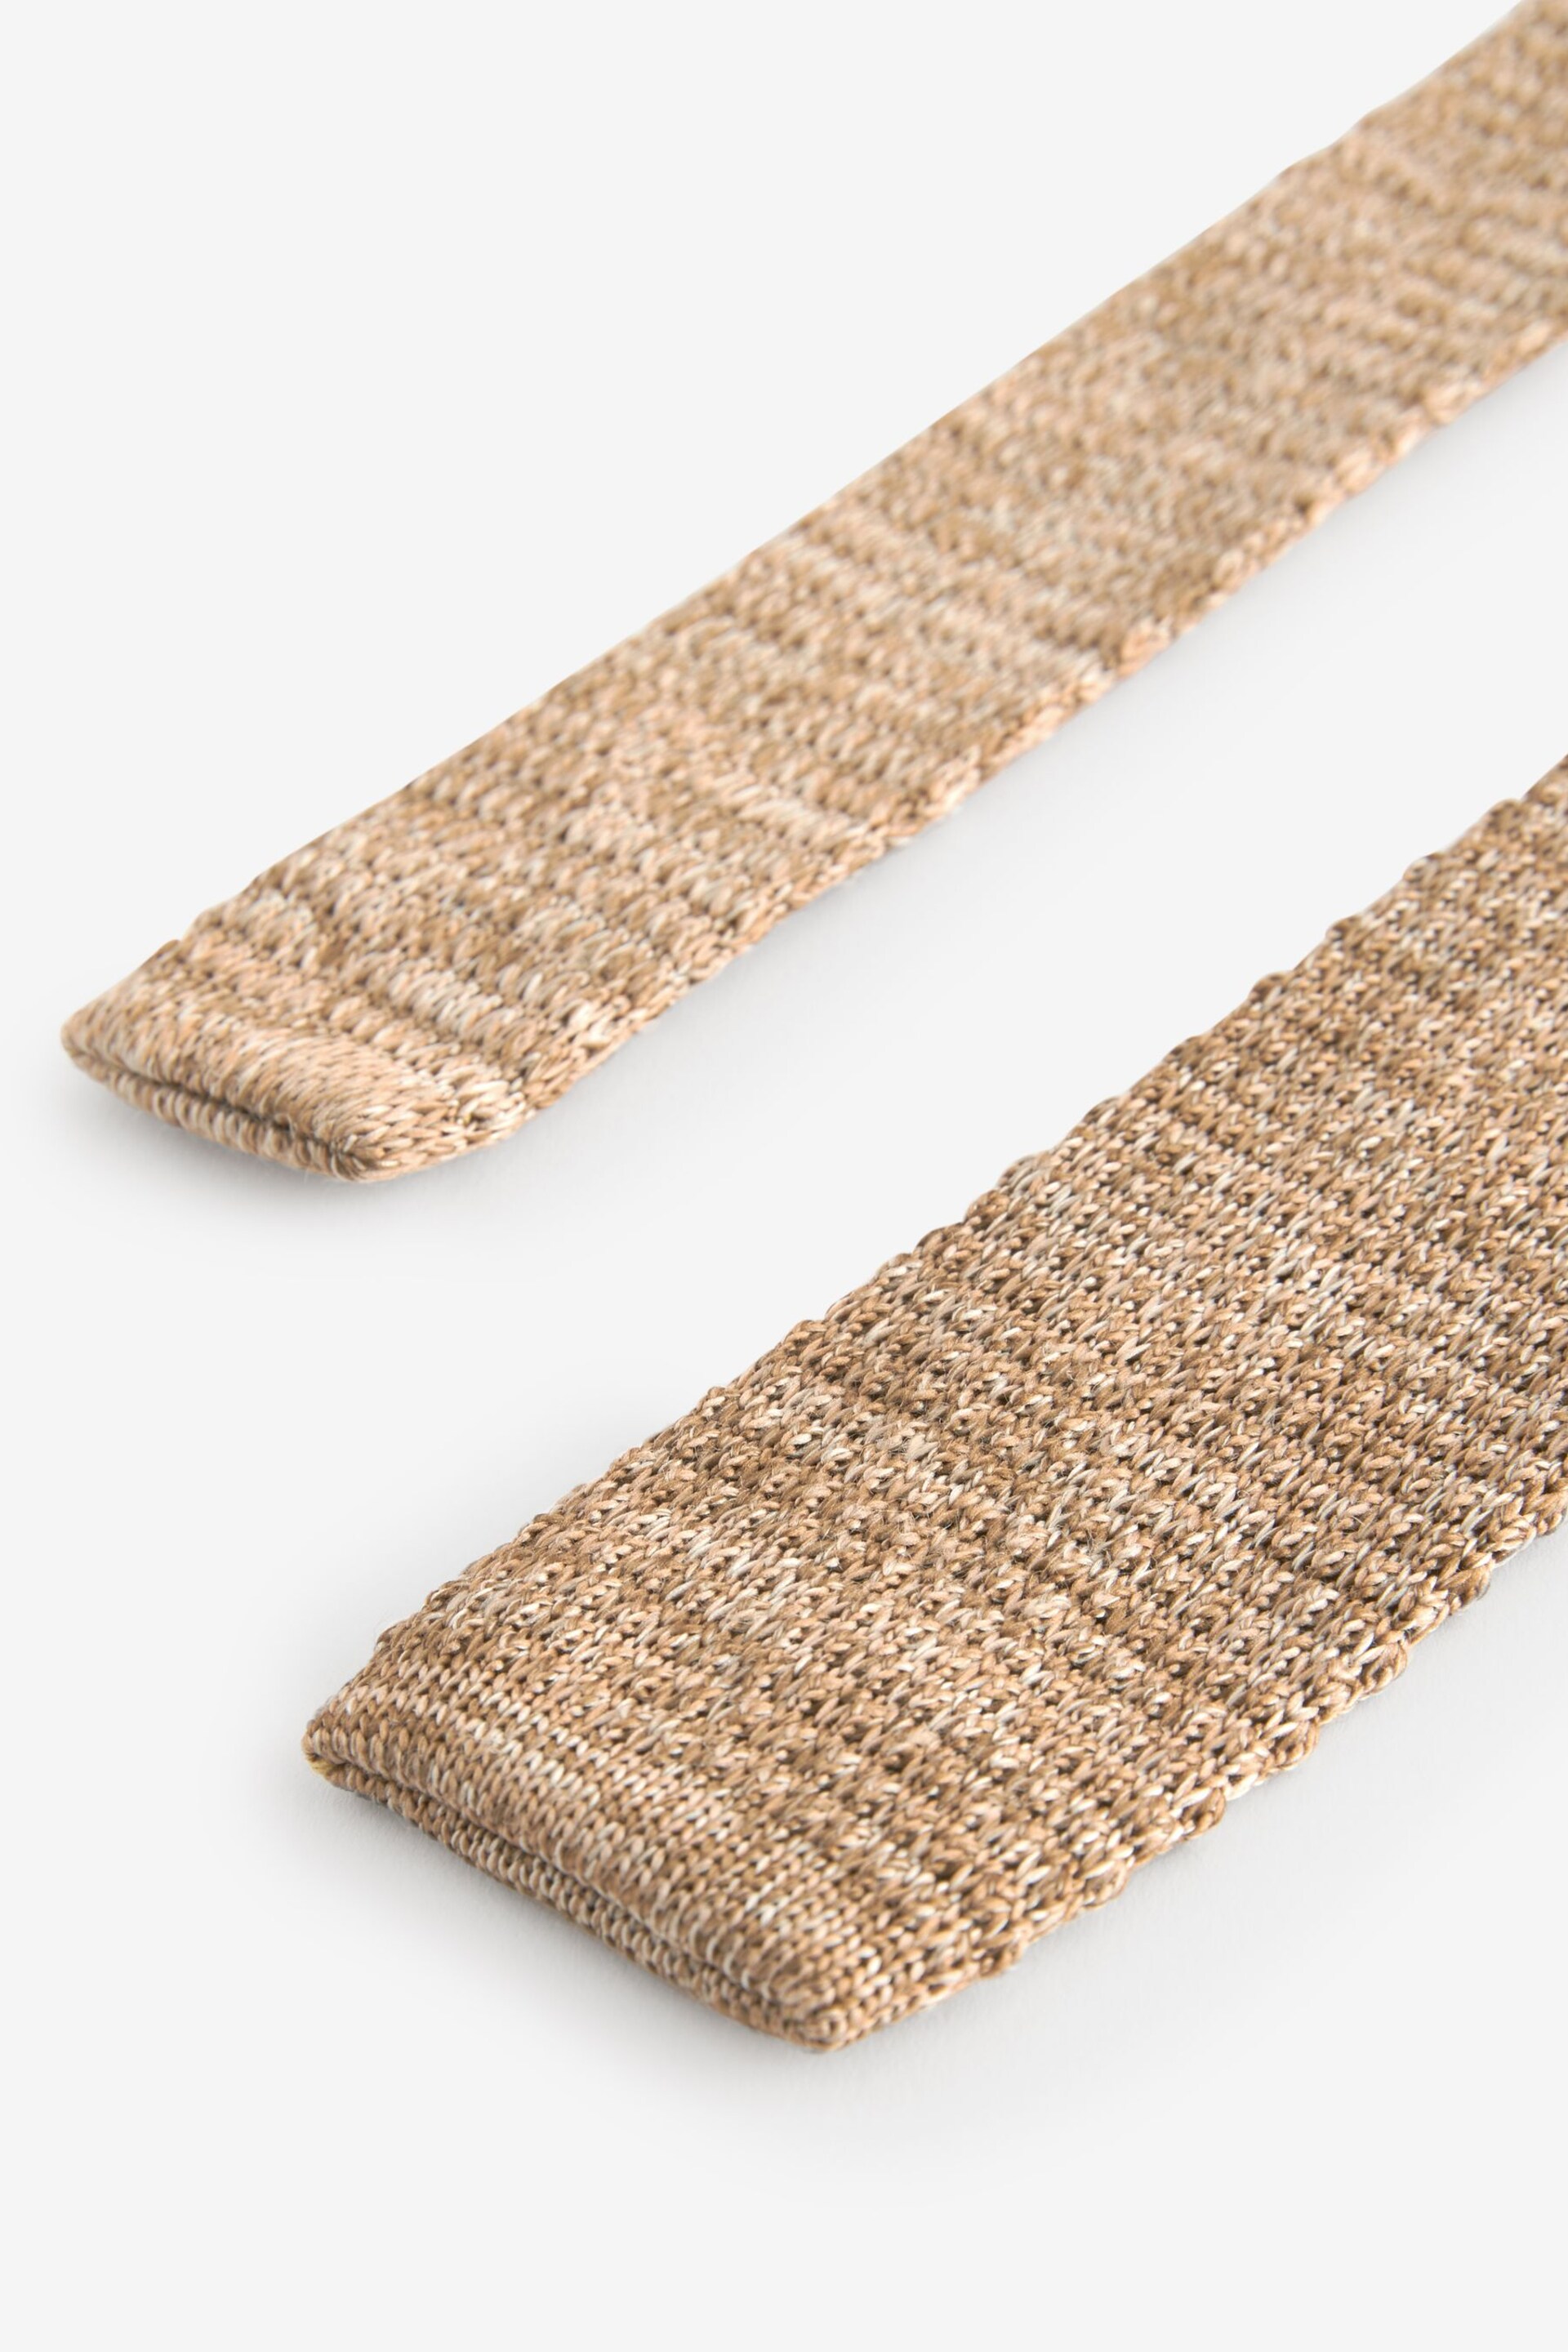 Neutral Brown Marl Slim Knitted Tie - Image 3 of 3